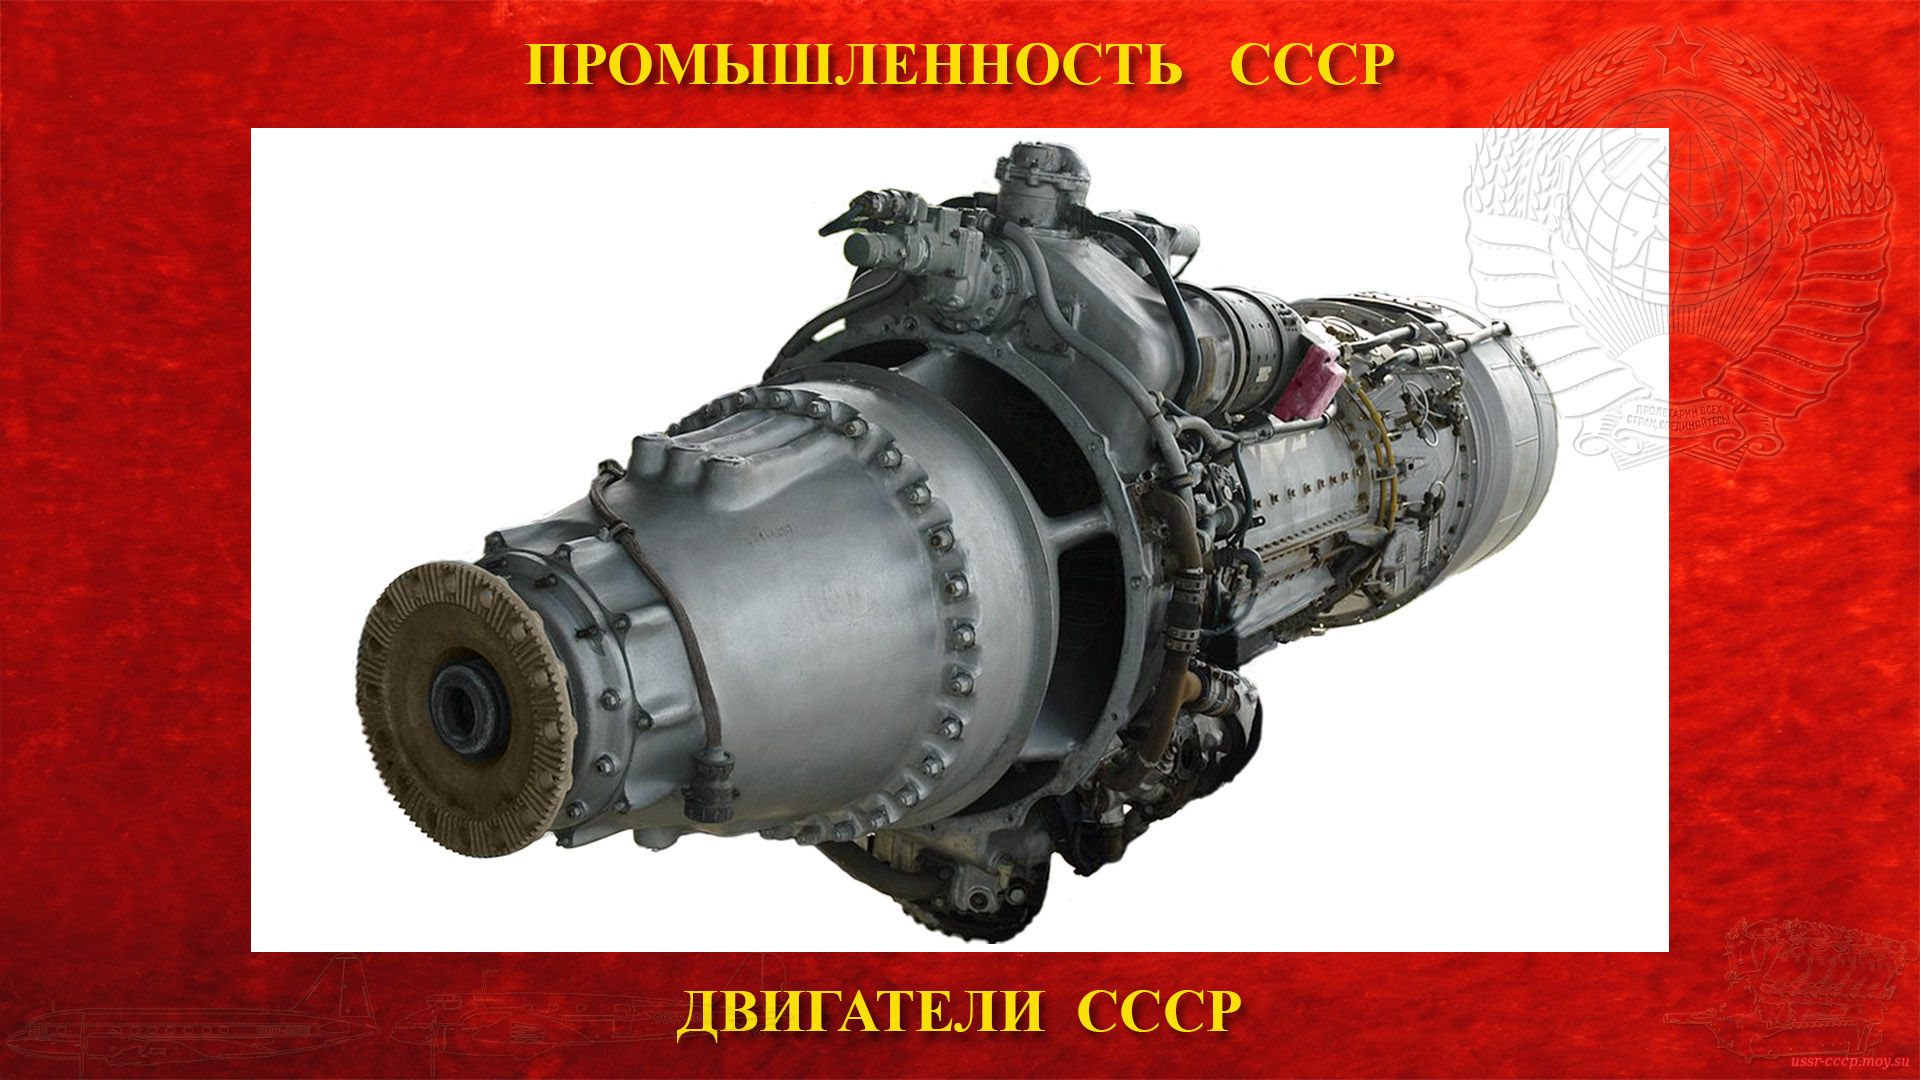 AI-20 — Советский авиационный турбовинтовой двигатель СССР